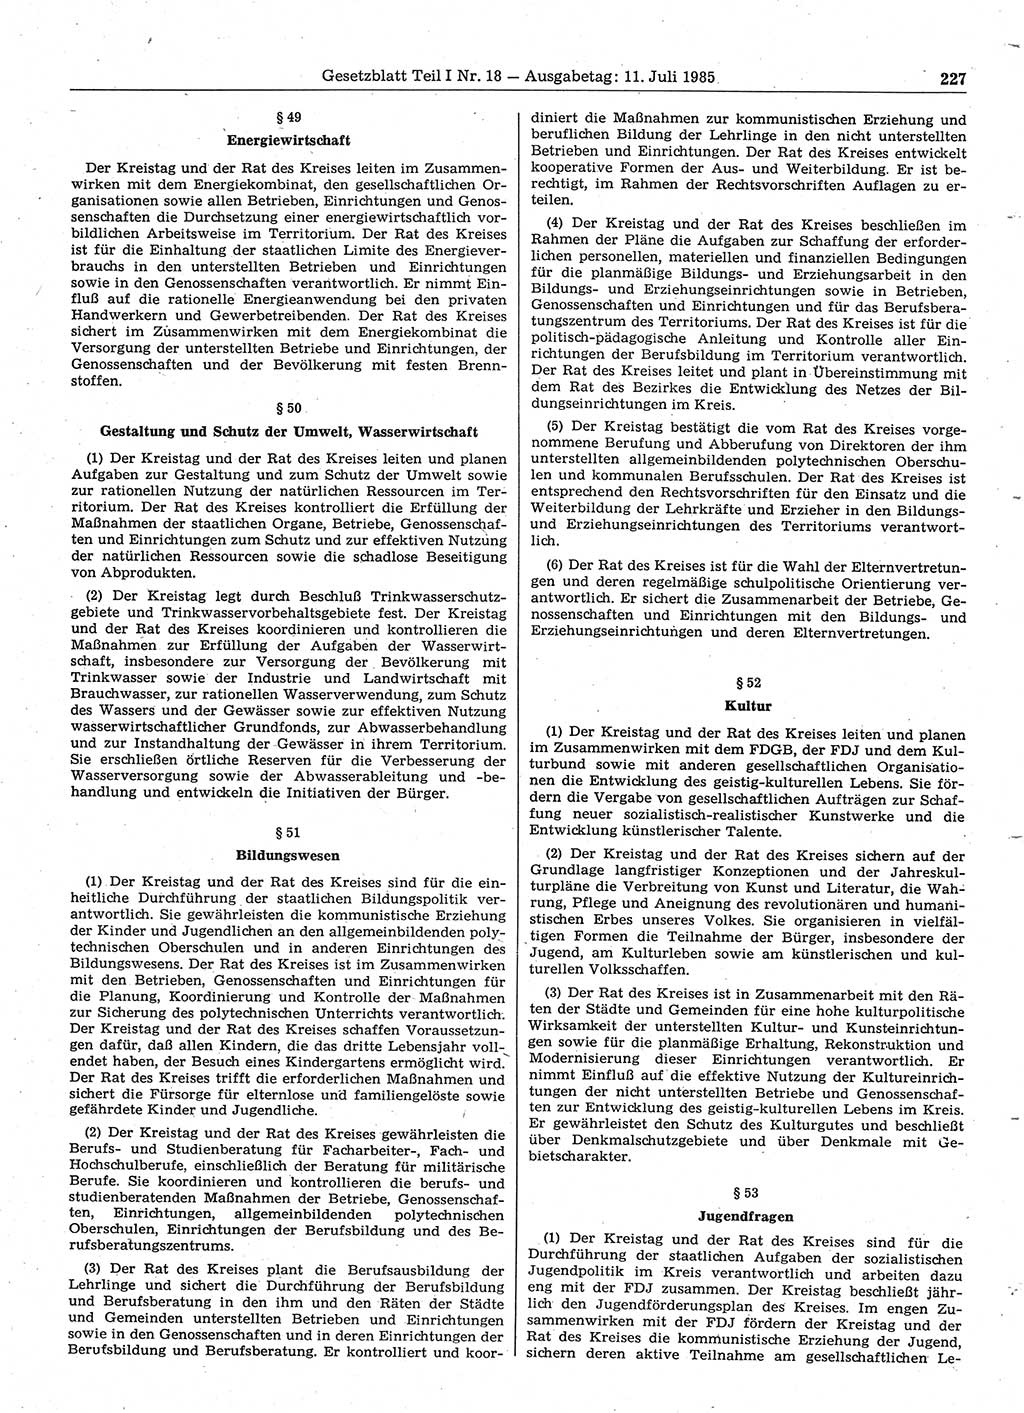 Gesetzblatt (GBl.) der Deutschen Demokratischen Republik (DDR) Teil Ⅰ 1985, Seite 227 (GBl. DDR Ⅰ 1985, S. 227)